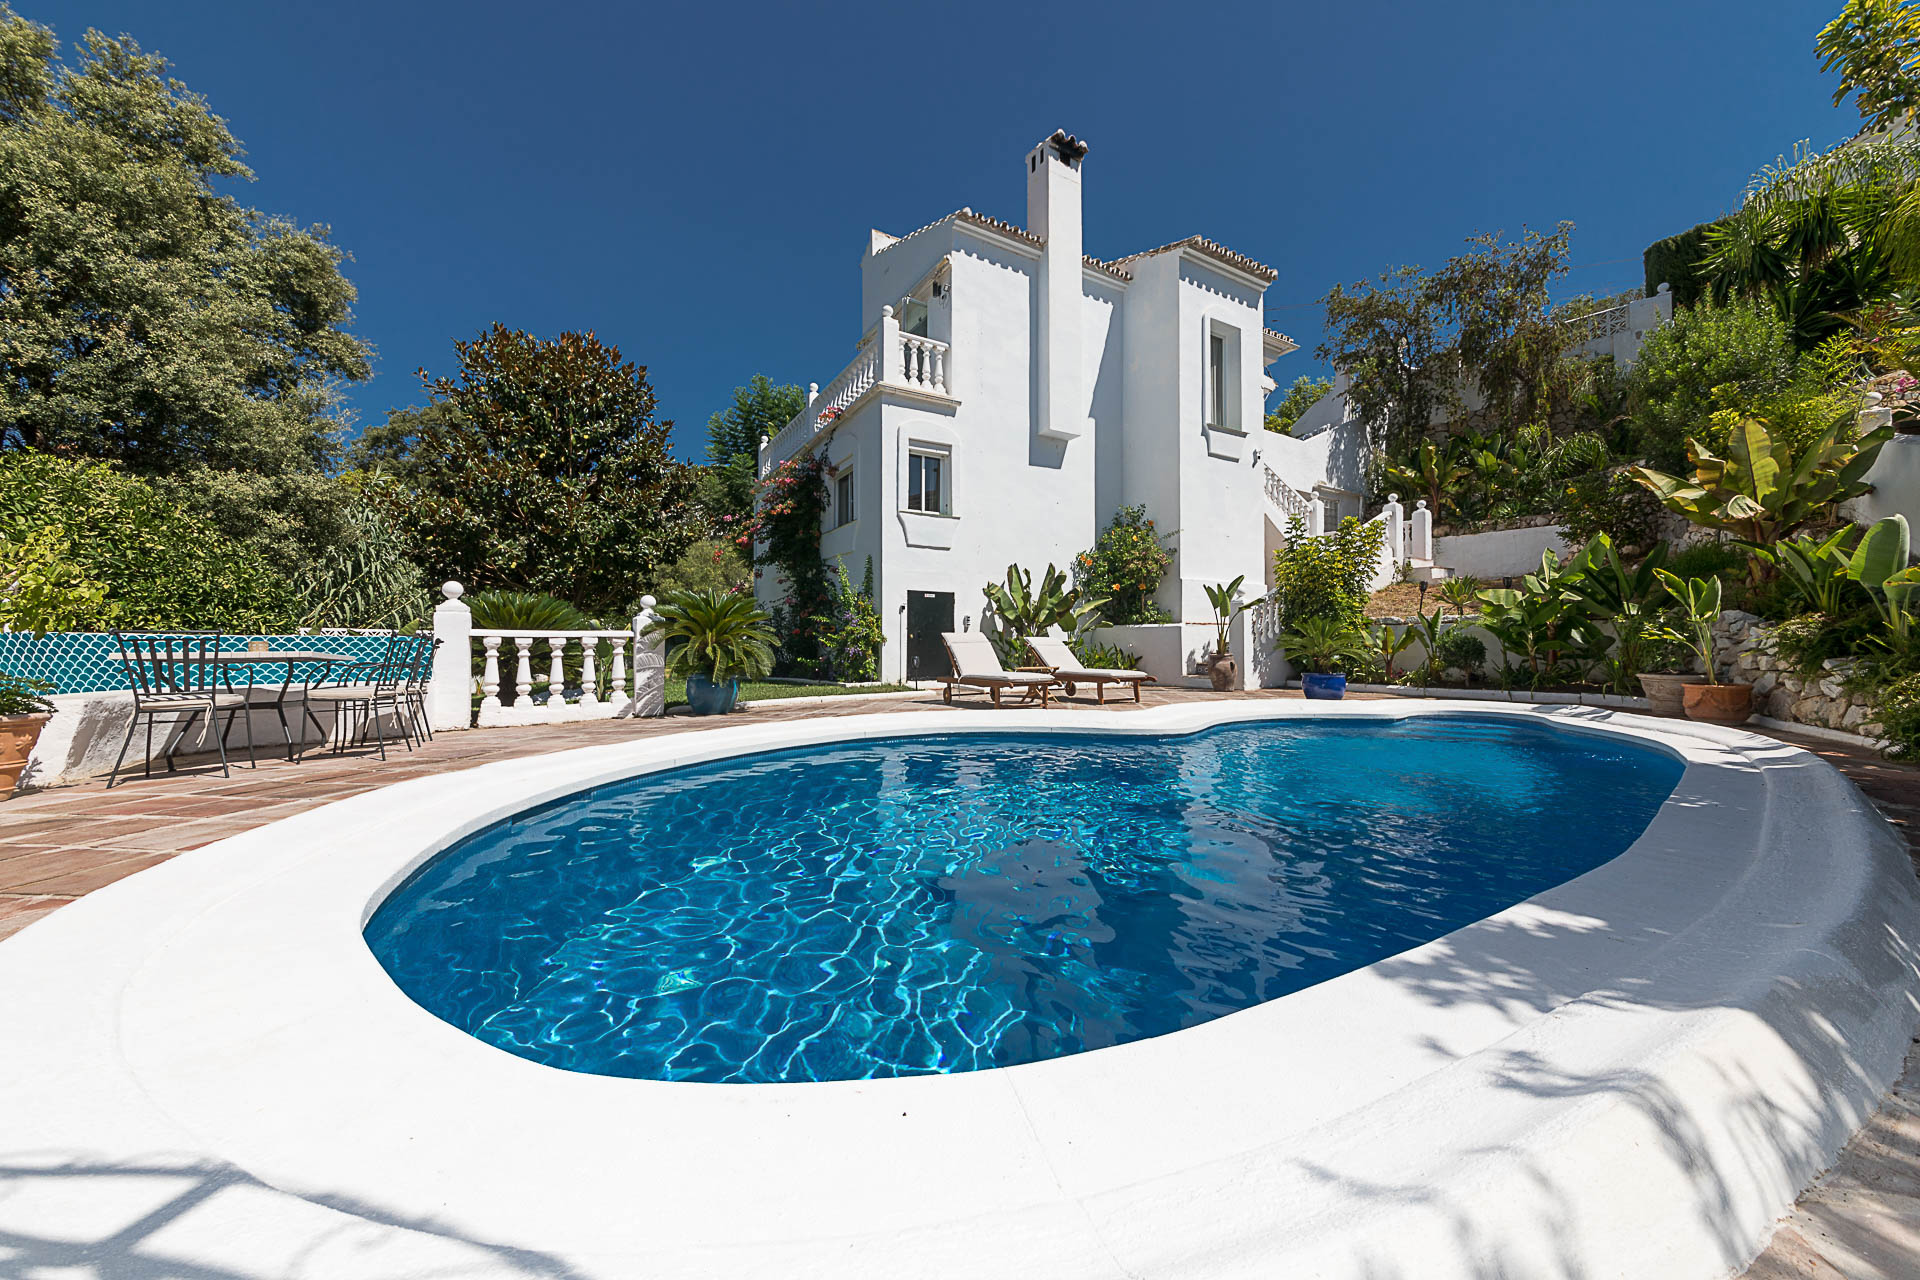 Refurbished villa standing in a garden oasis at El Rosario Marbella